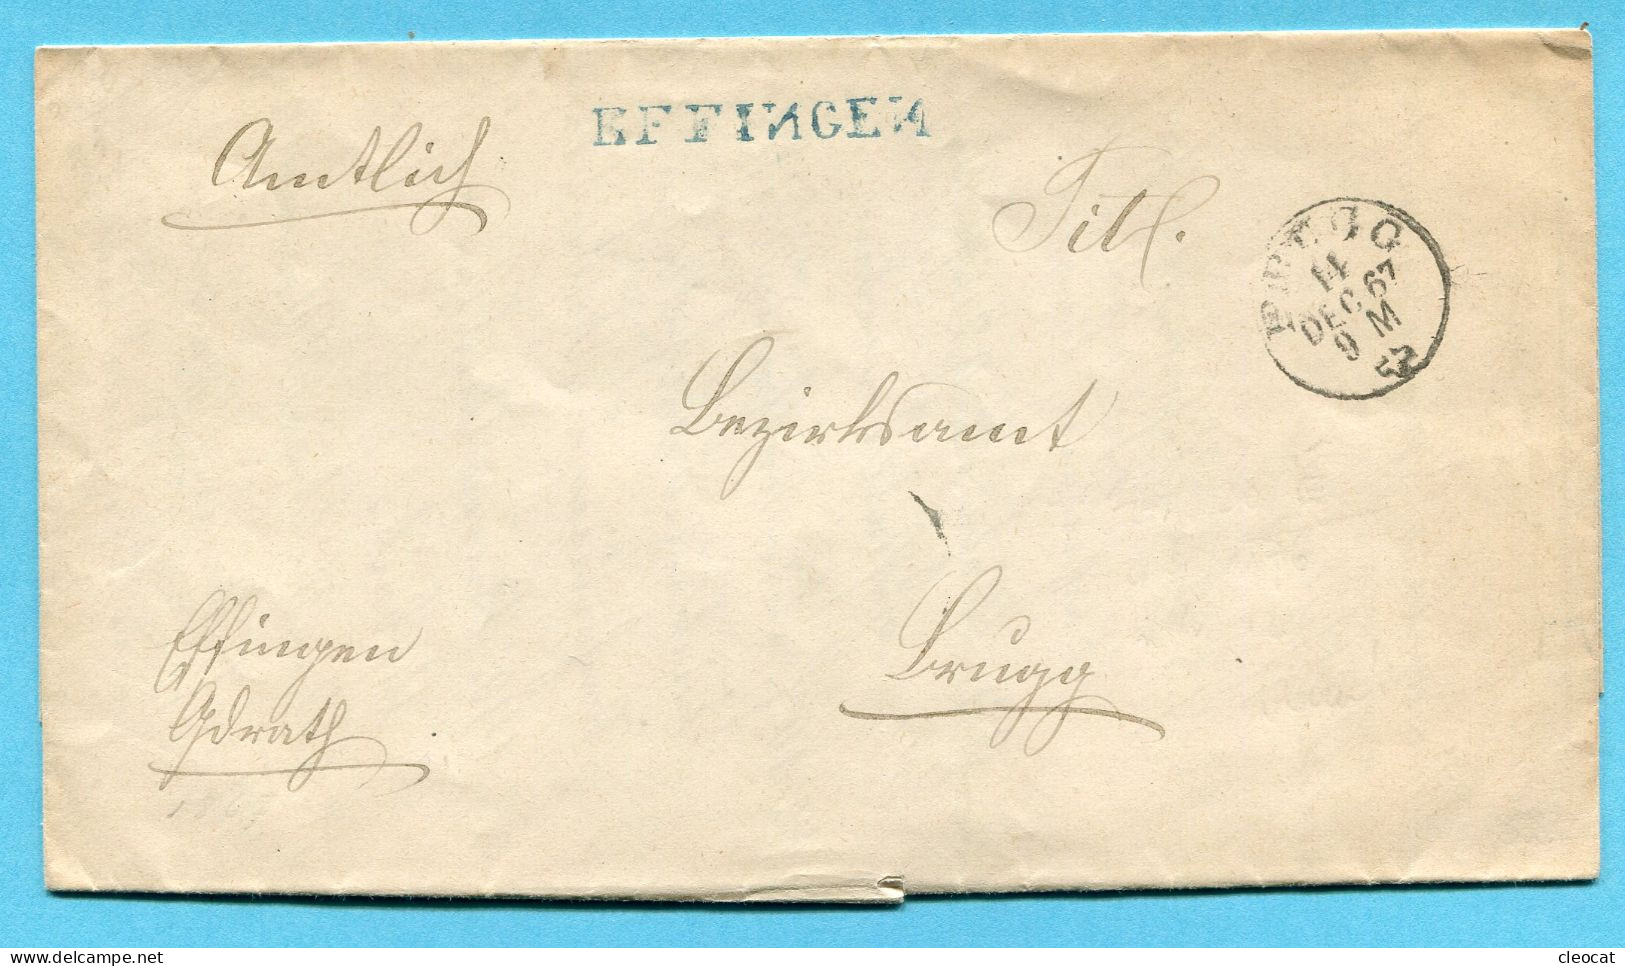 Faltbrief Von Effingen Nach Brugg 1867 - ...-1845 Préphilatélie